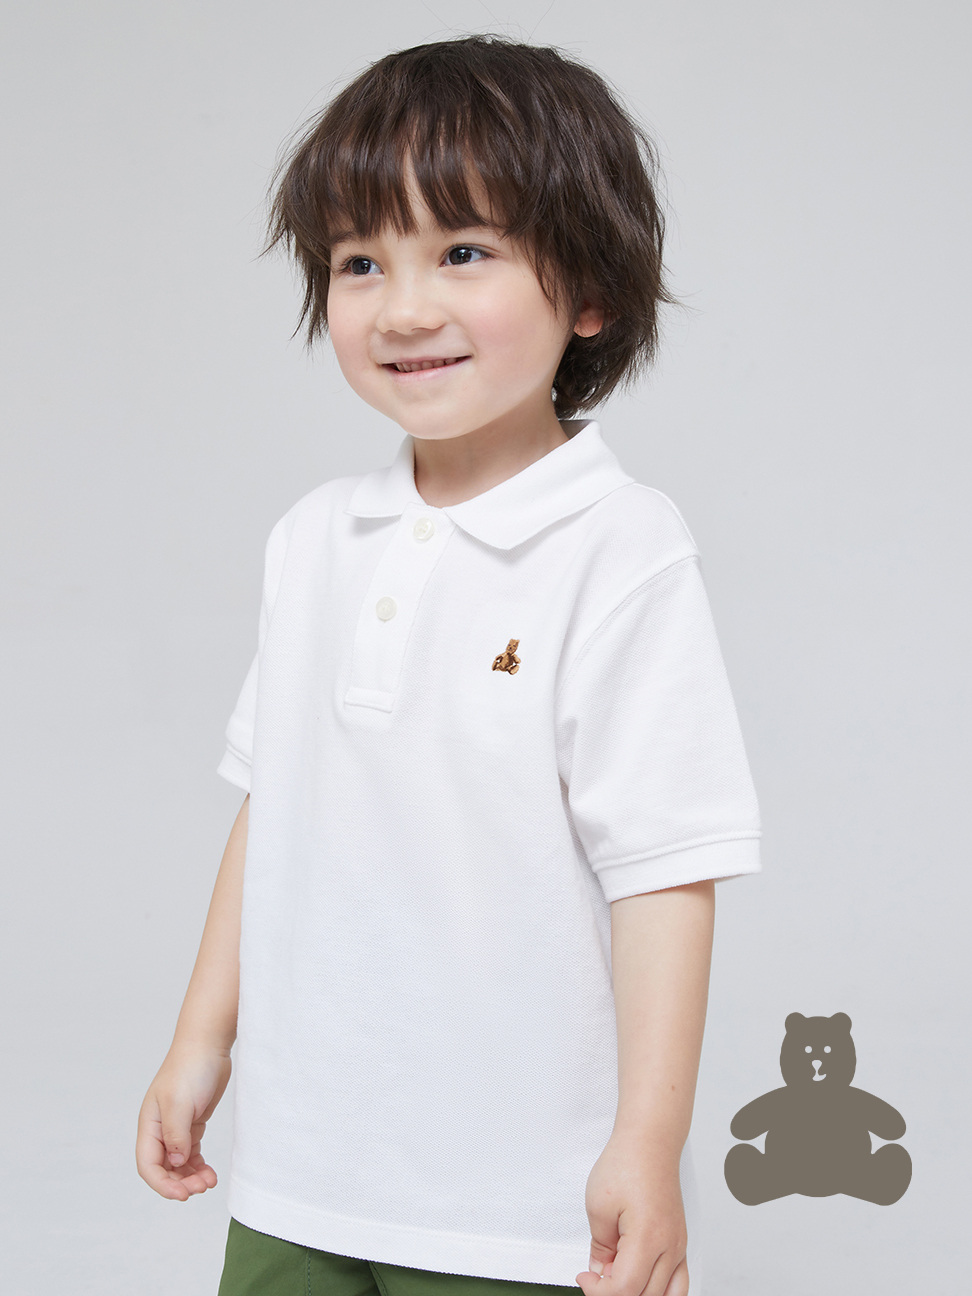 男幼童裝|活力小熊刺繡運動短袖POLO衫 布萊納系列-白色